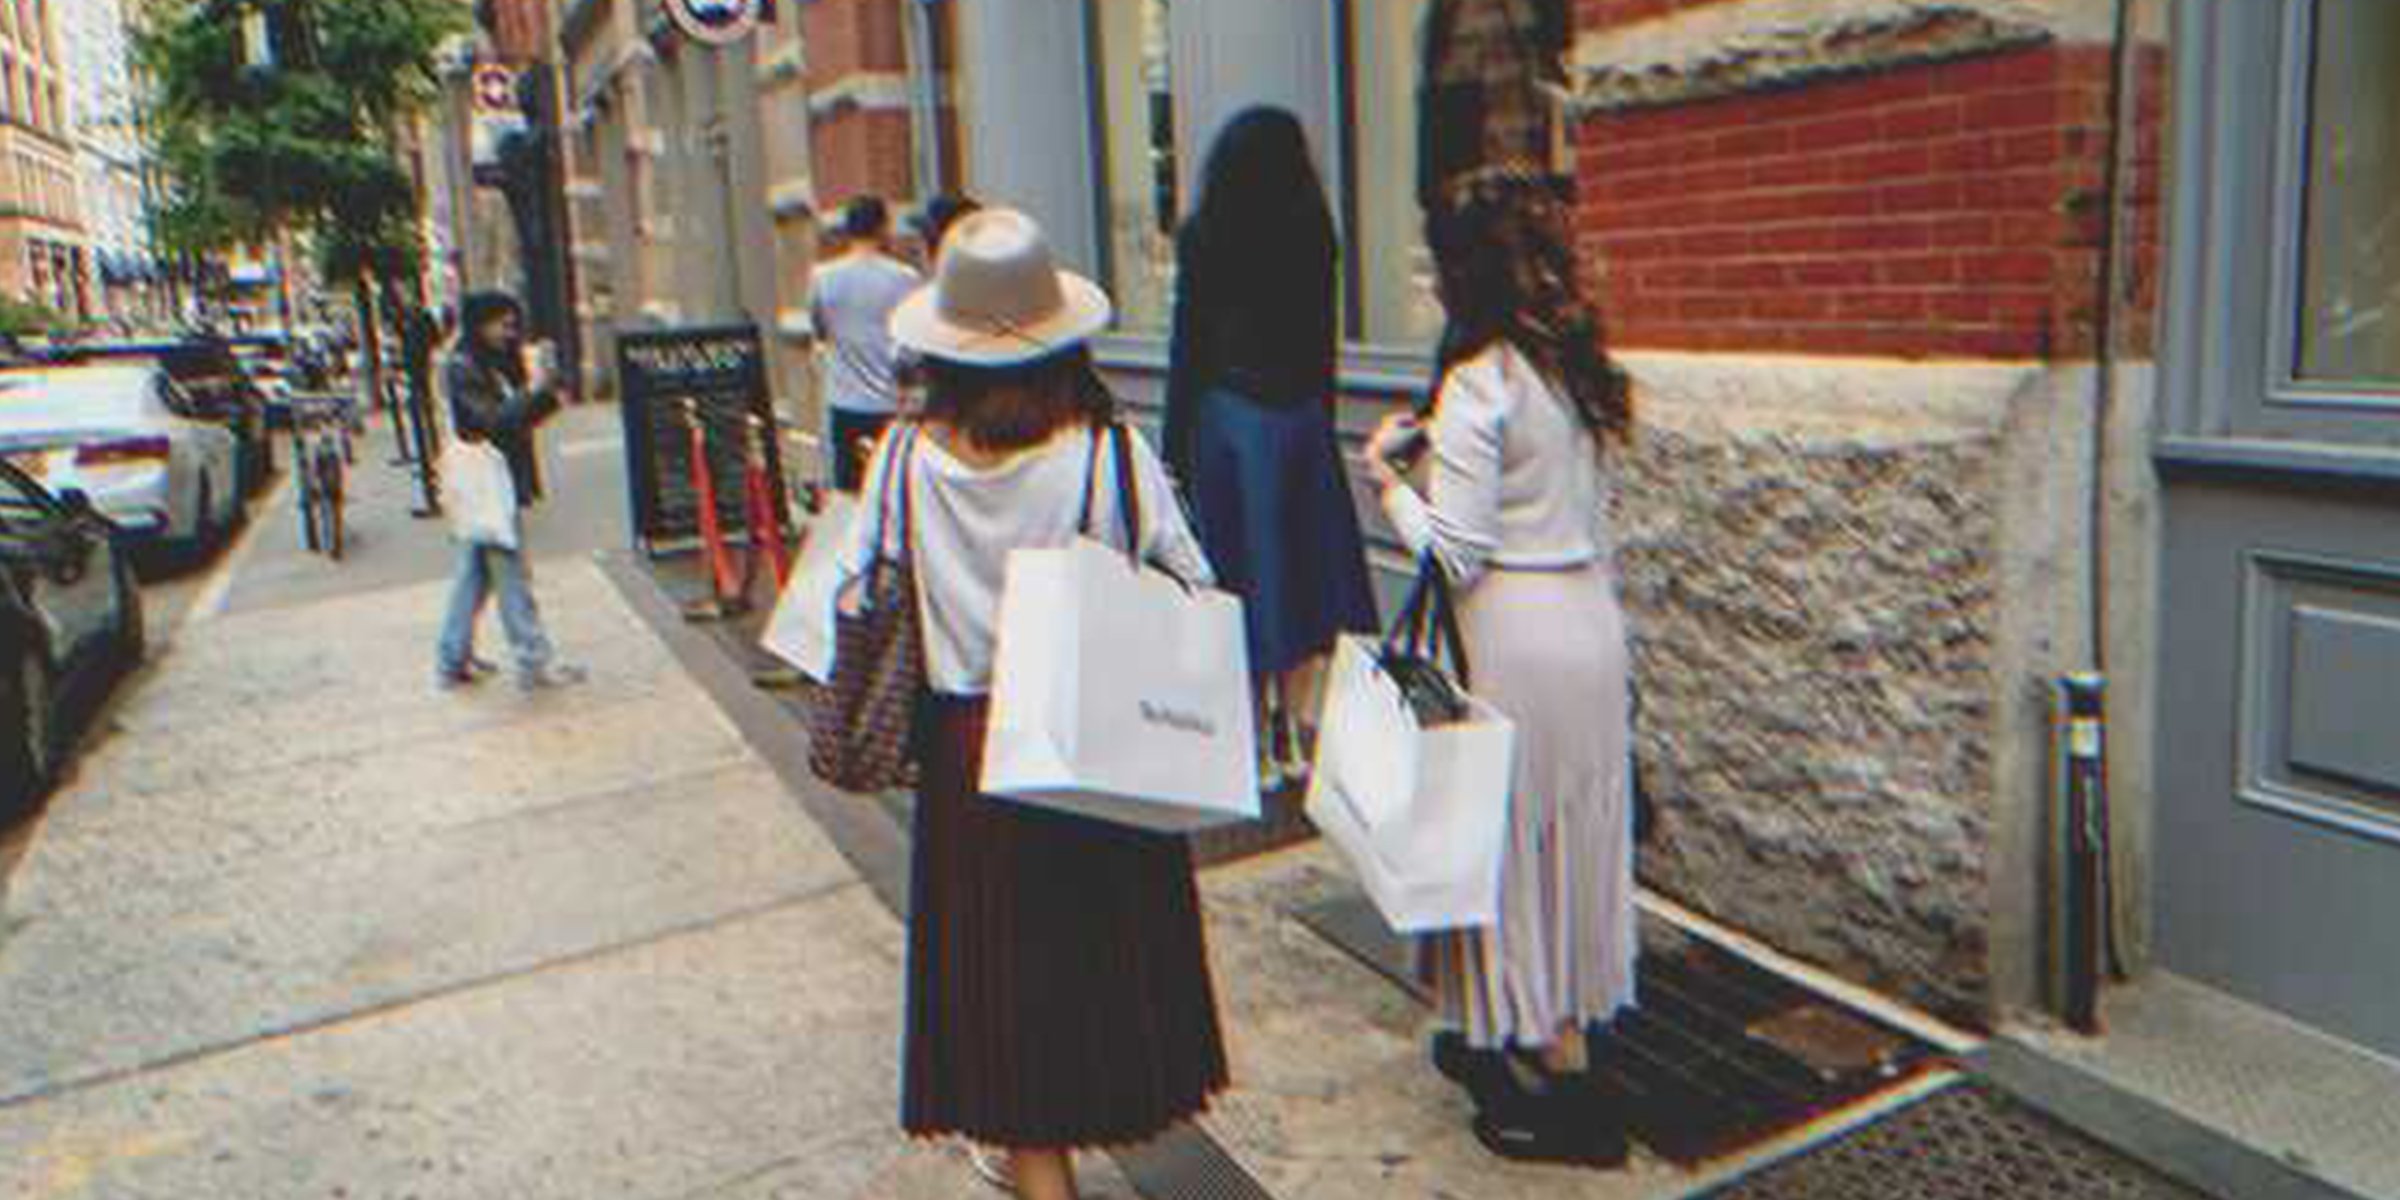 Mujeres cargan bosas de tiendas | Foto: Shutterstock